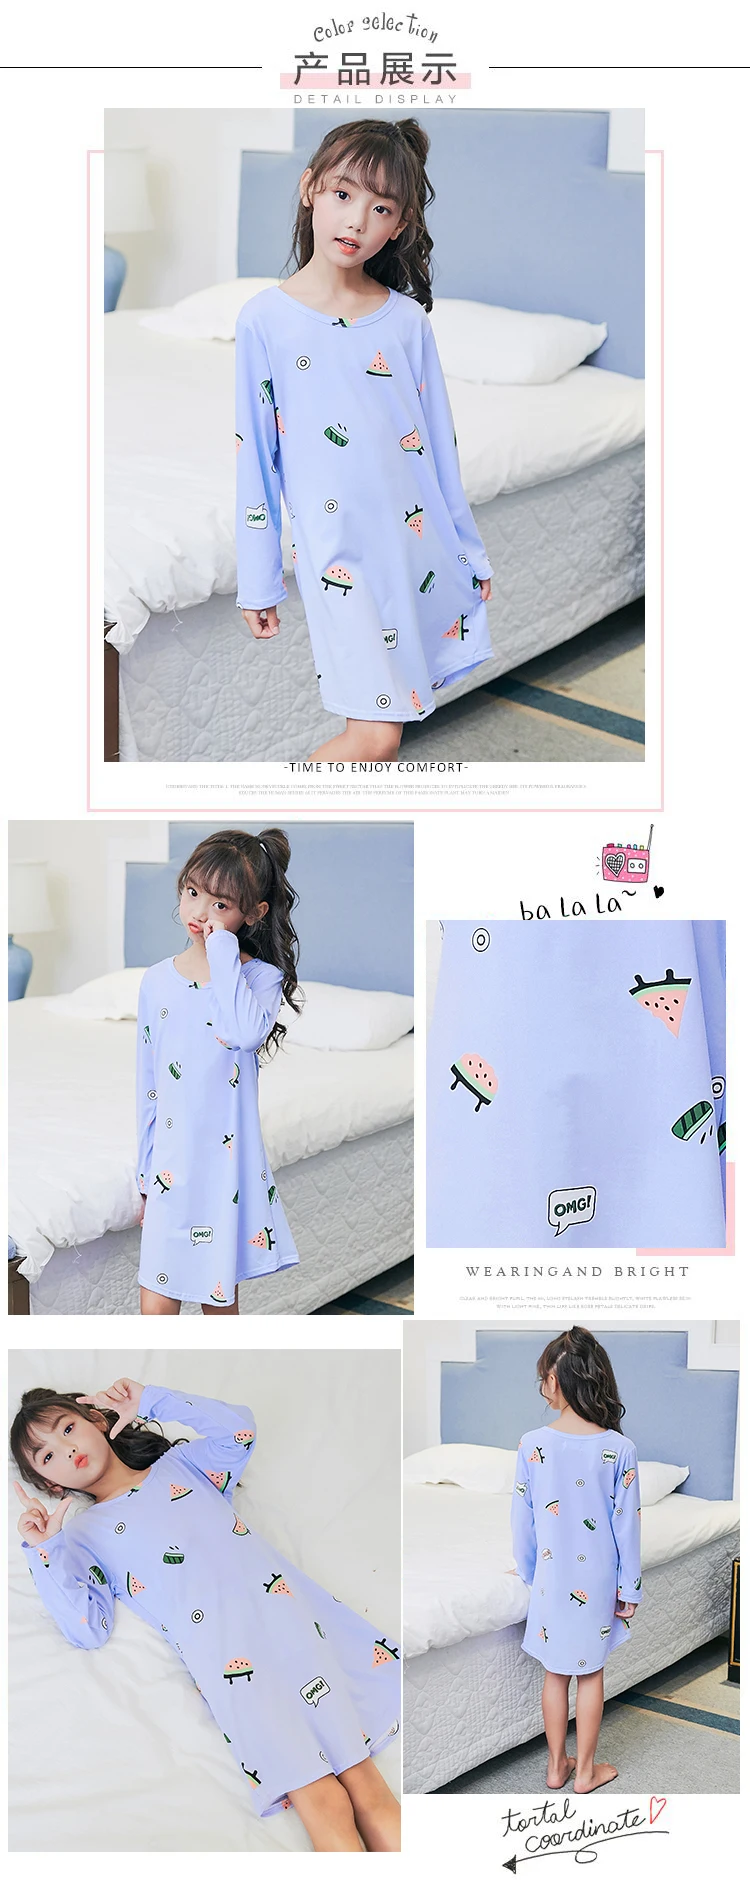 RN-9 детская одежда для сна с длинным рукавом в году Осень Девочки ночные рубашки мультфильм дети милые весна принцесса пижамы для сна партии